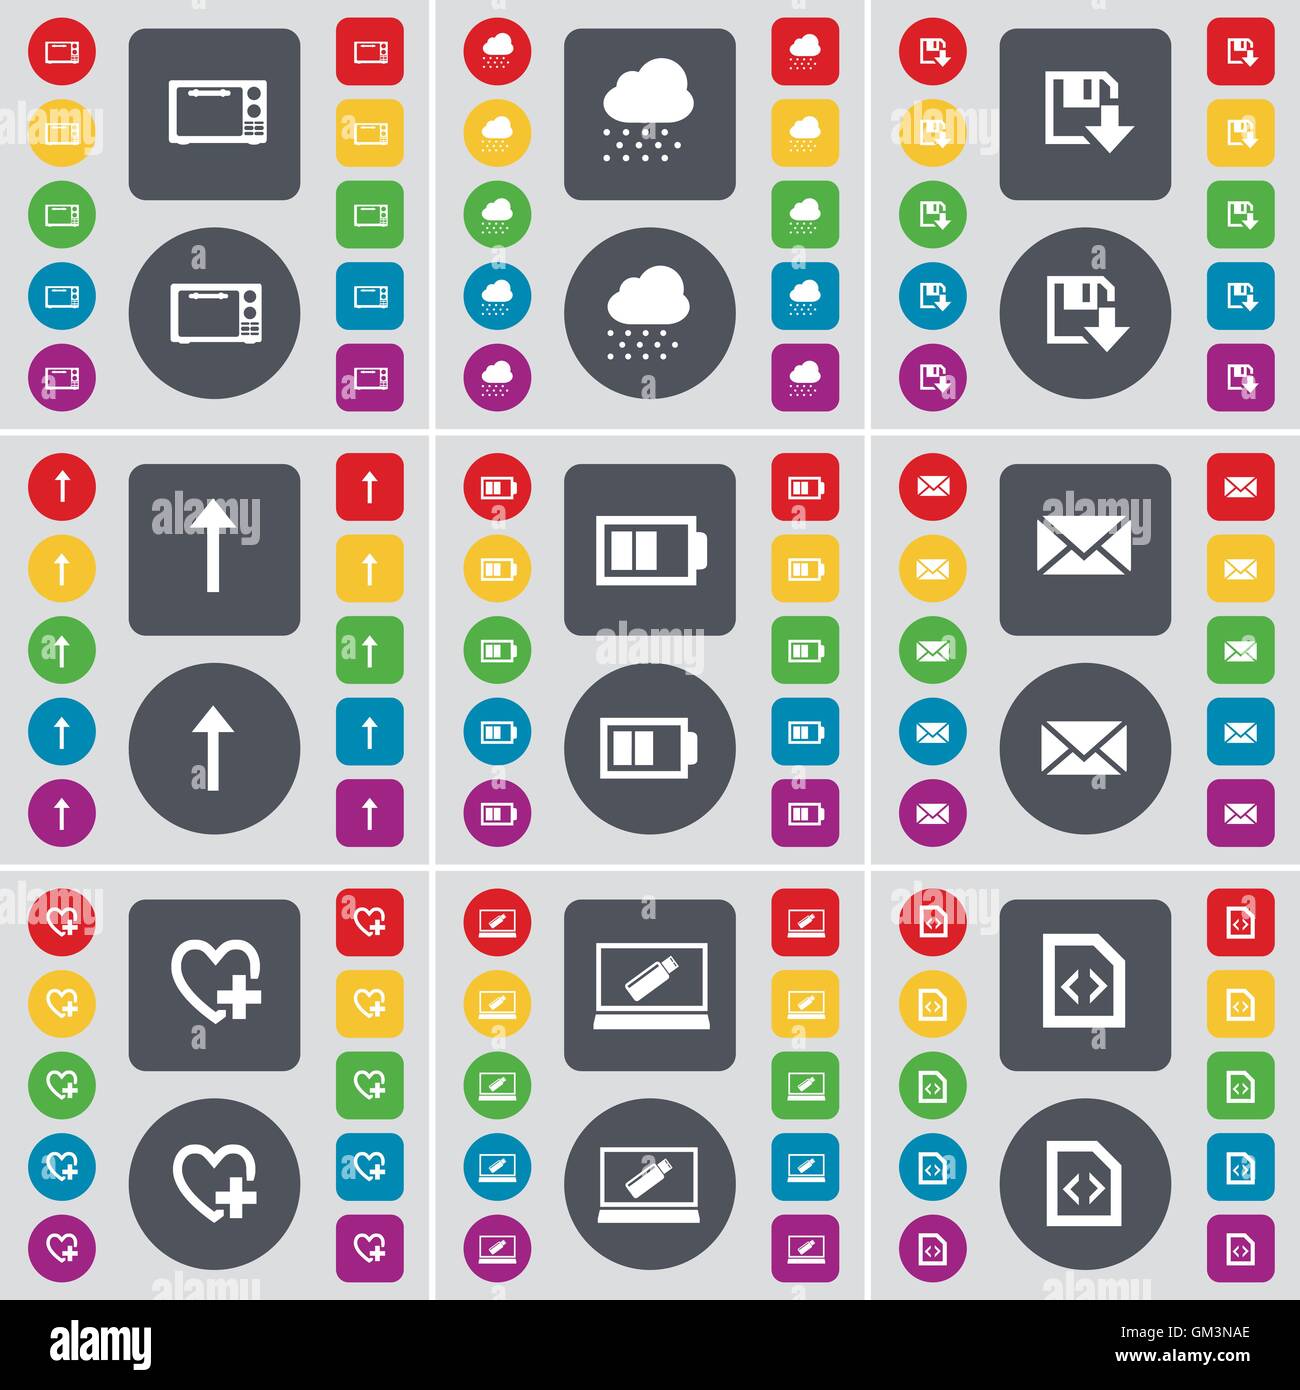 Mikrowelle, Cloud, Floppy, Pfeil nach oben, Batterie, Nachricht, Herz,  Laptop, Datei- Symbol. Eine große Auswahl an flache, farbige Schaltflächen  für Ihre Konstruktion. Vektor Stock-Vektorgrafik - Alamy